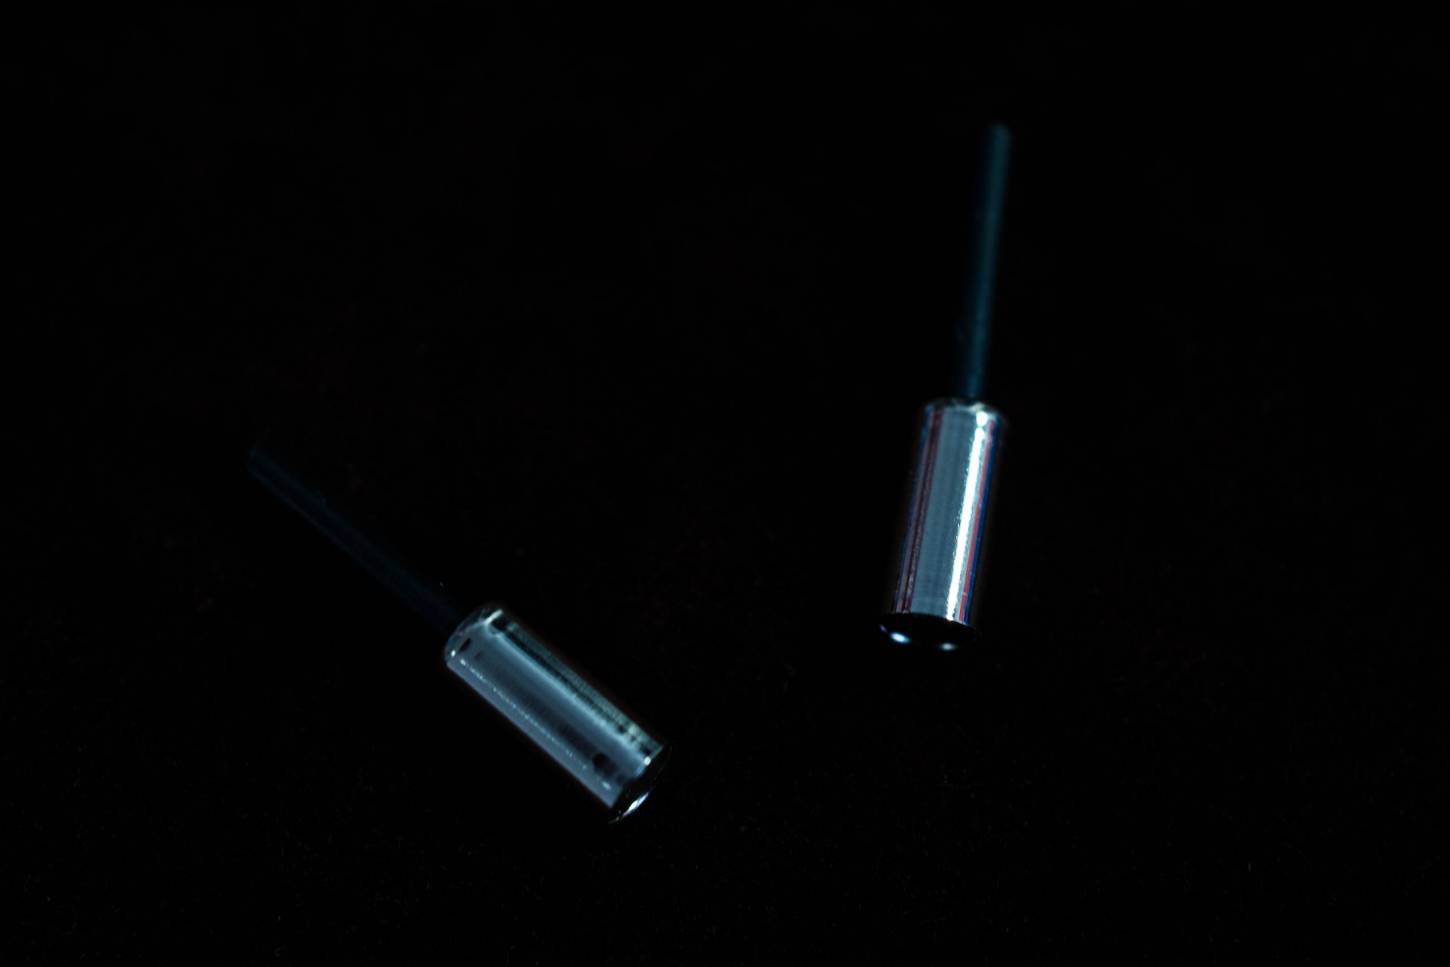 2x tapas finales de latón Shimano con revestimiento para la cubierta exterior del cable de freno de 5 mm Ø en cromo plateado